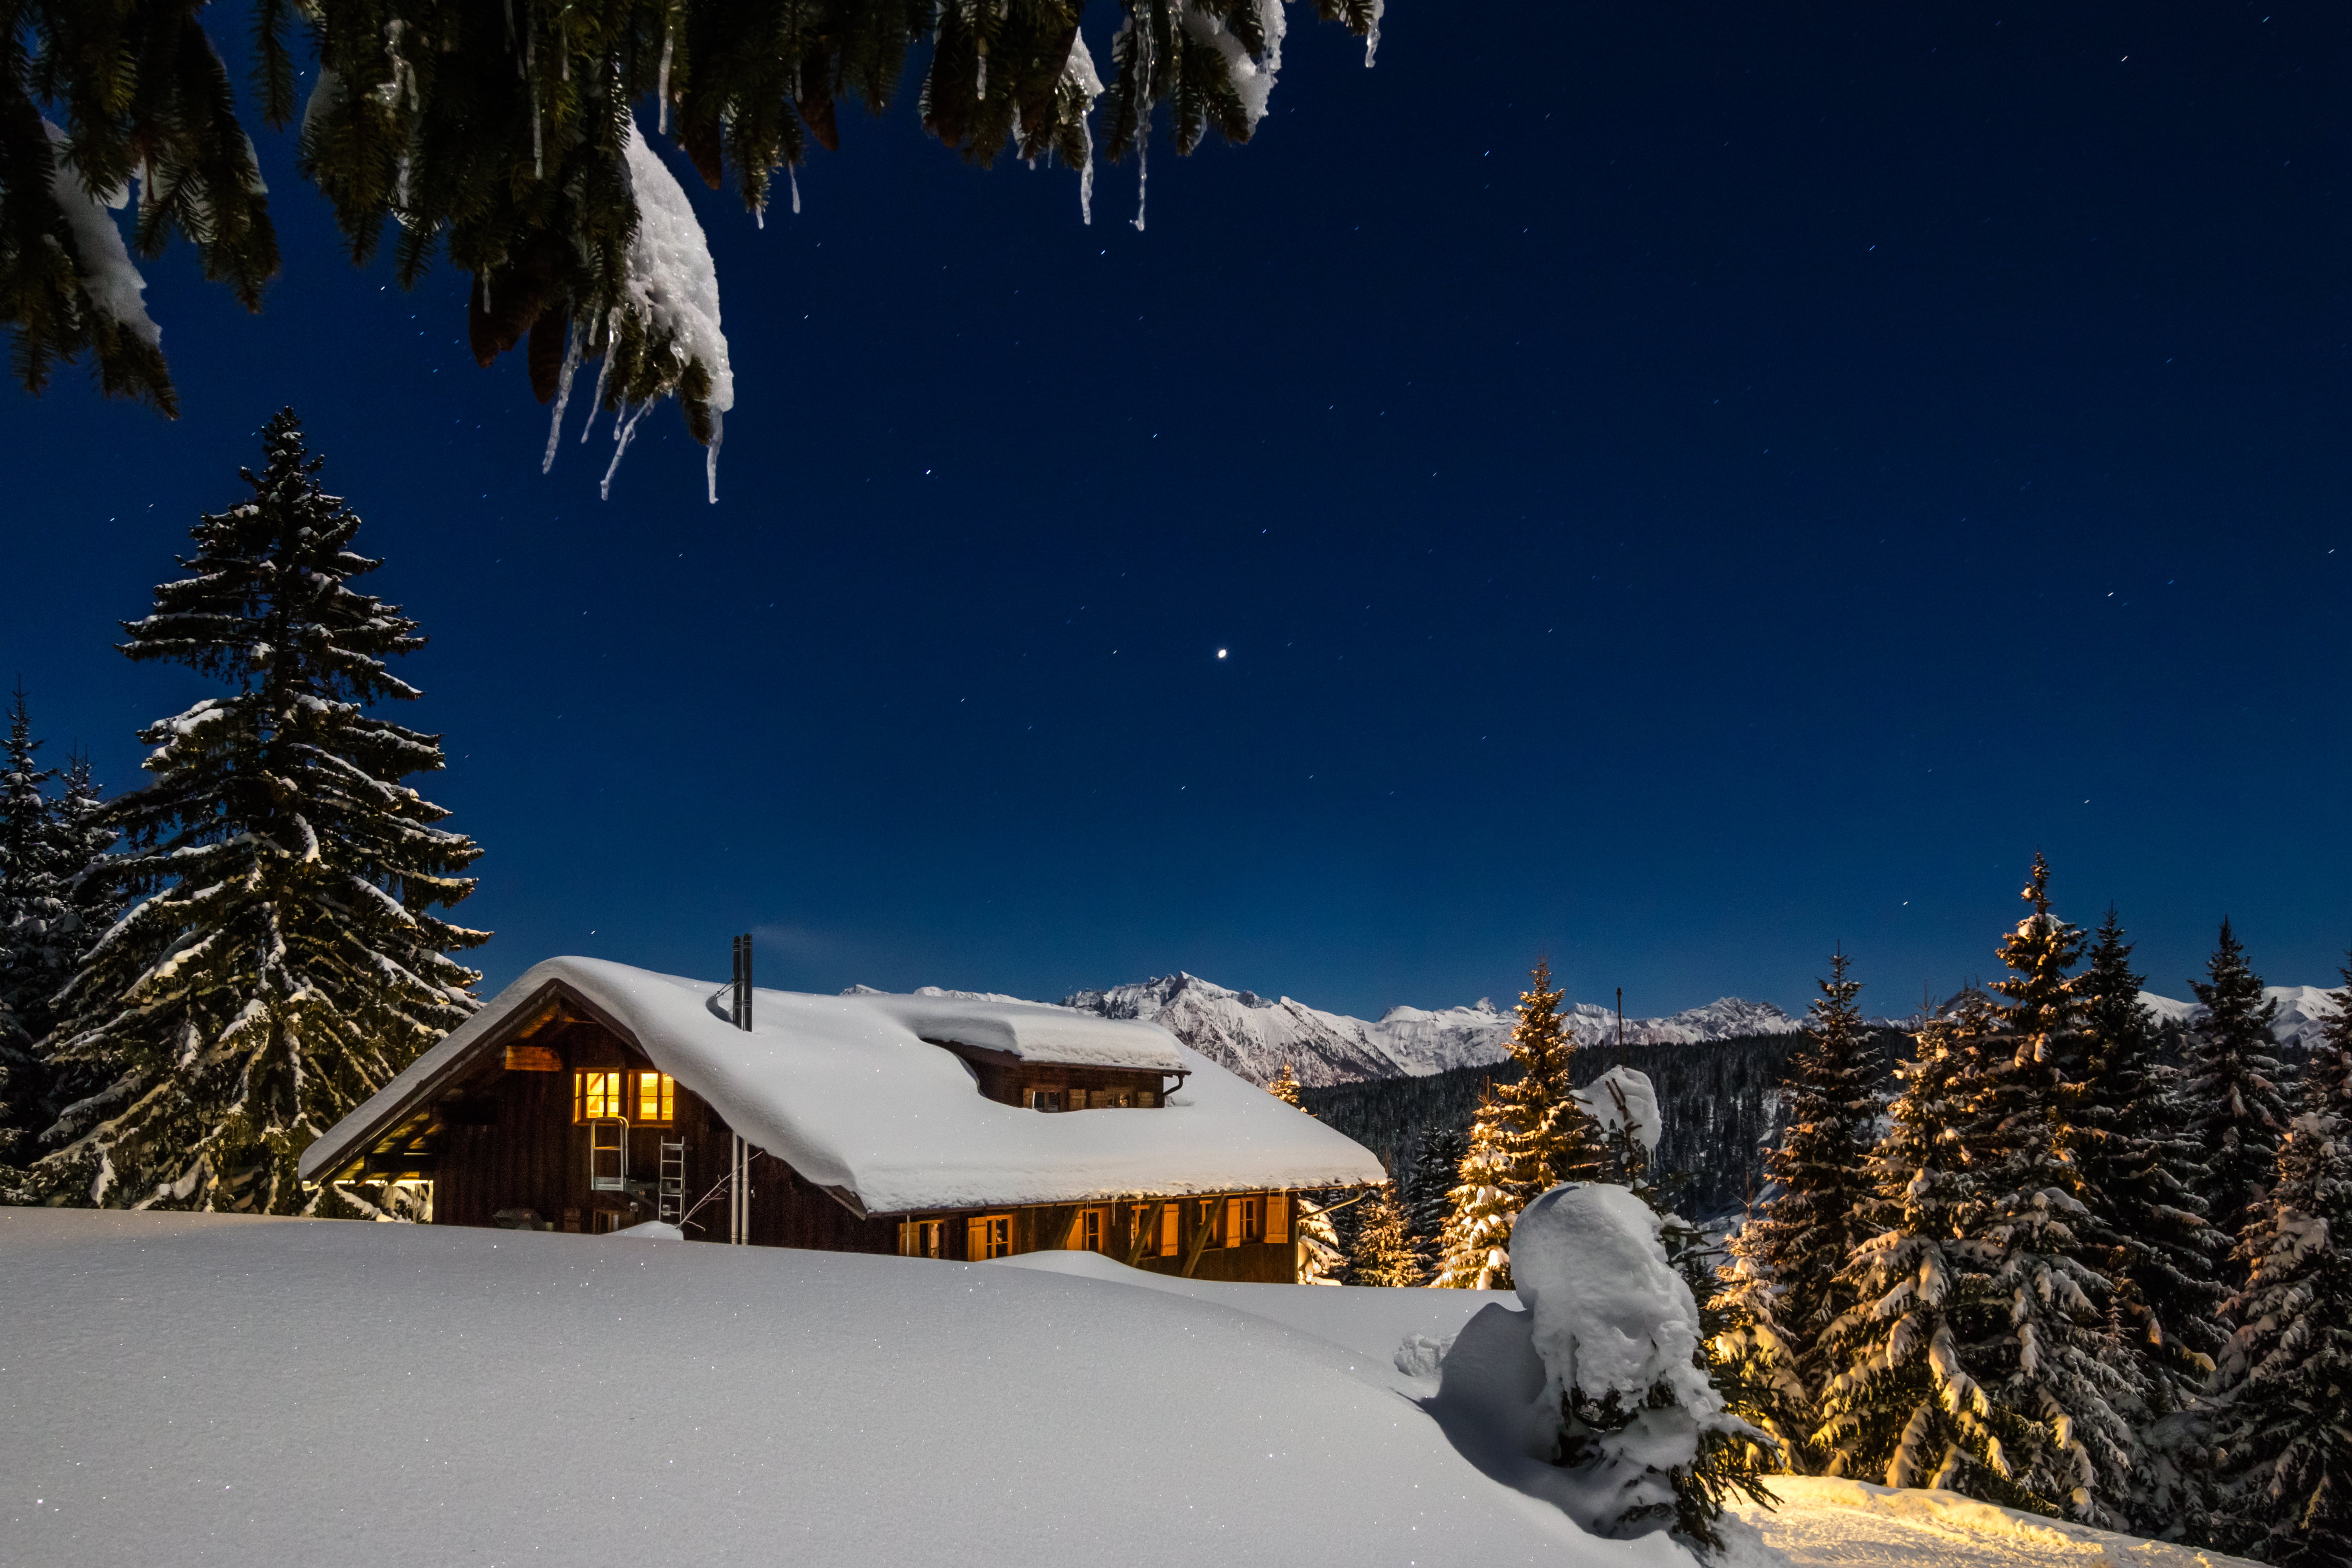 Best winter. Домик в снегу. Домик в горах зимой ночью. Канадский дом в снегу. Ночная зима домик в горах.